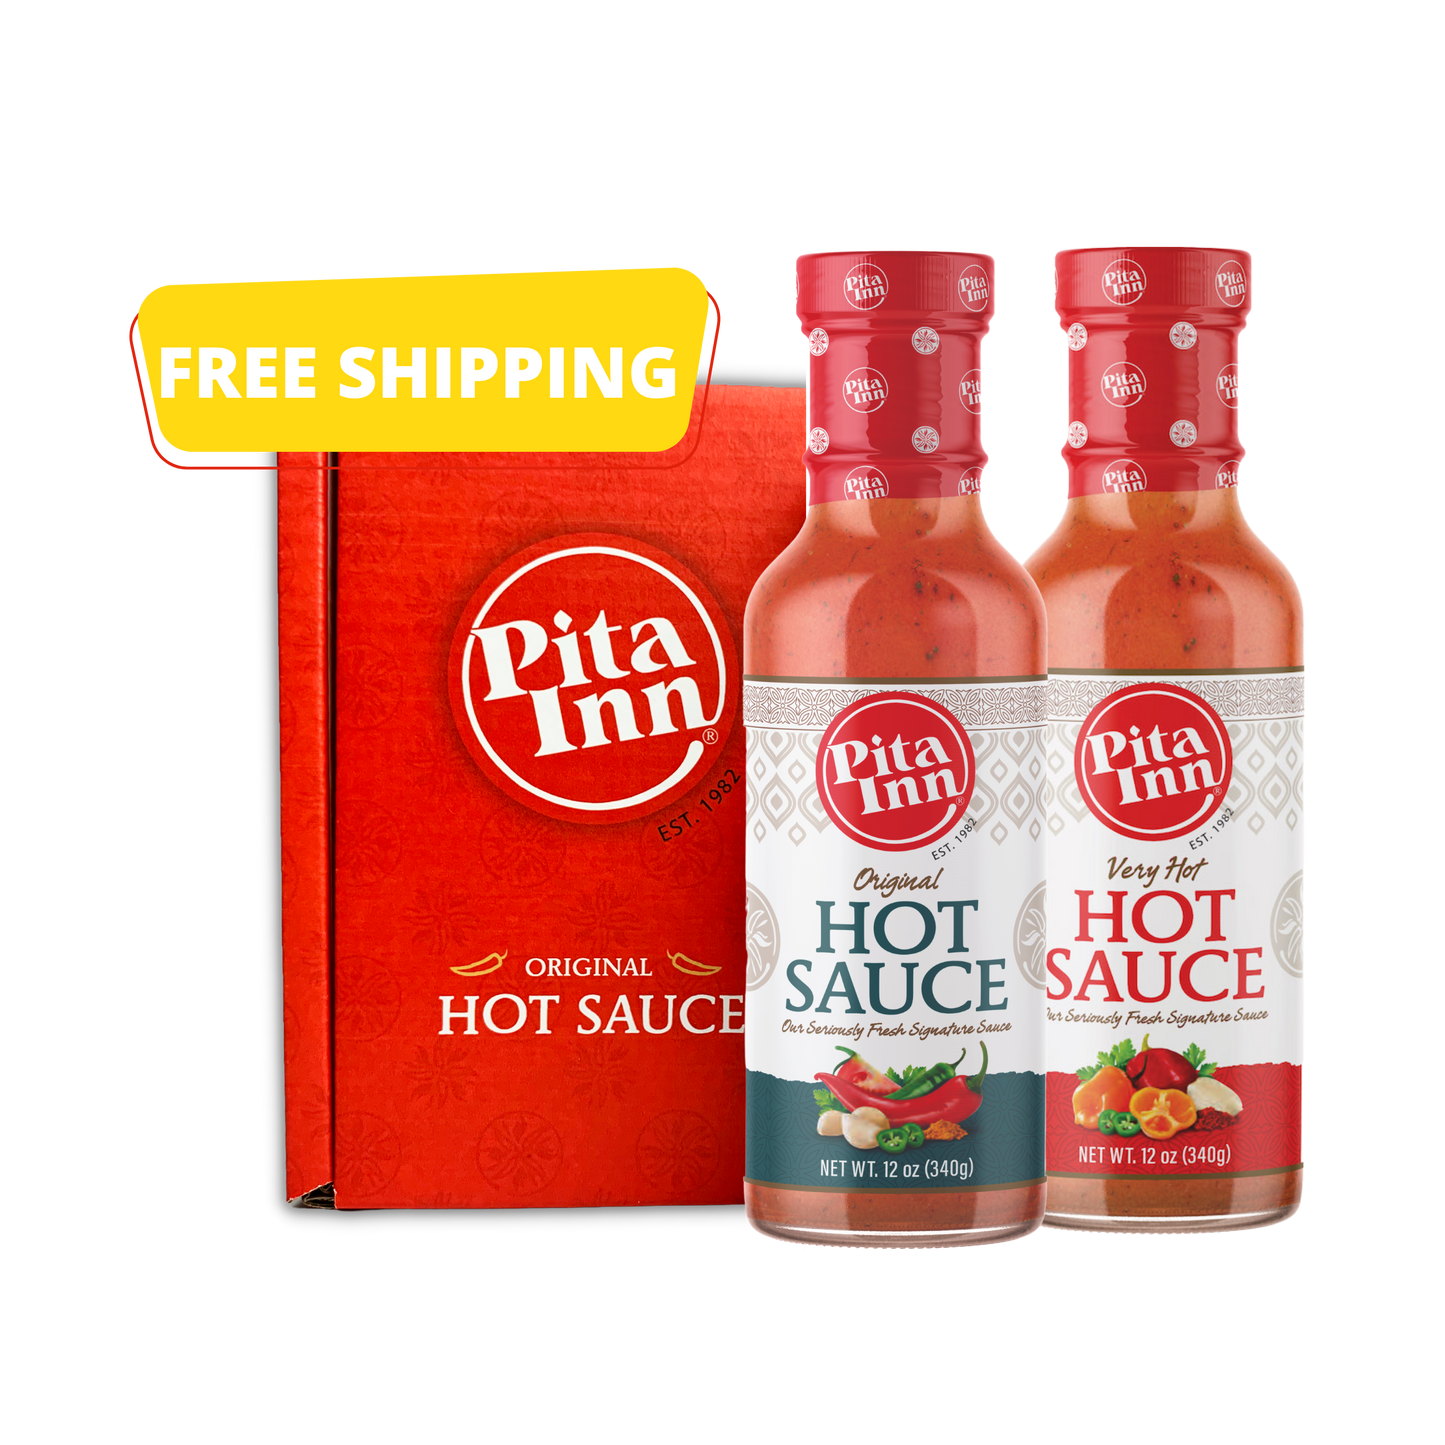 Pita Inn Original and Very Hot, Hot Sauce Gift Box